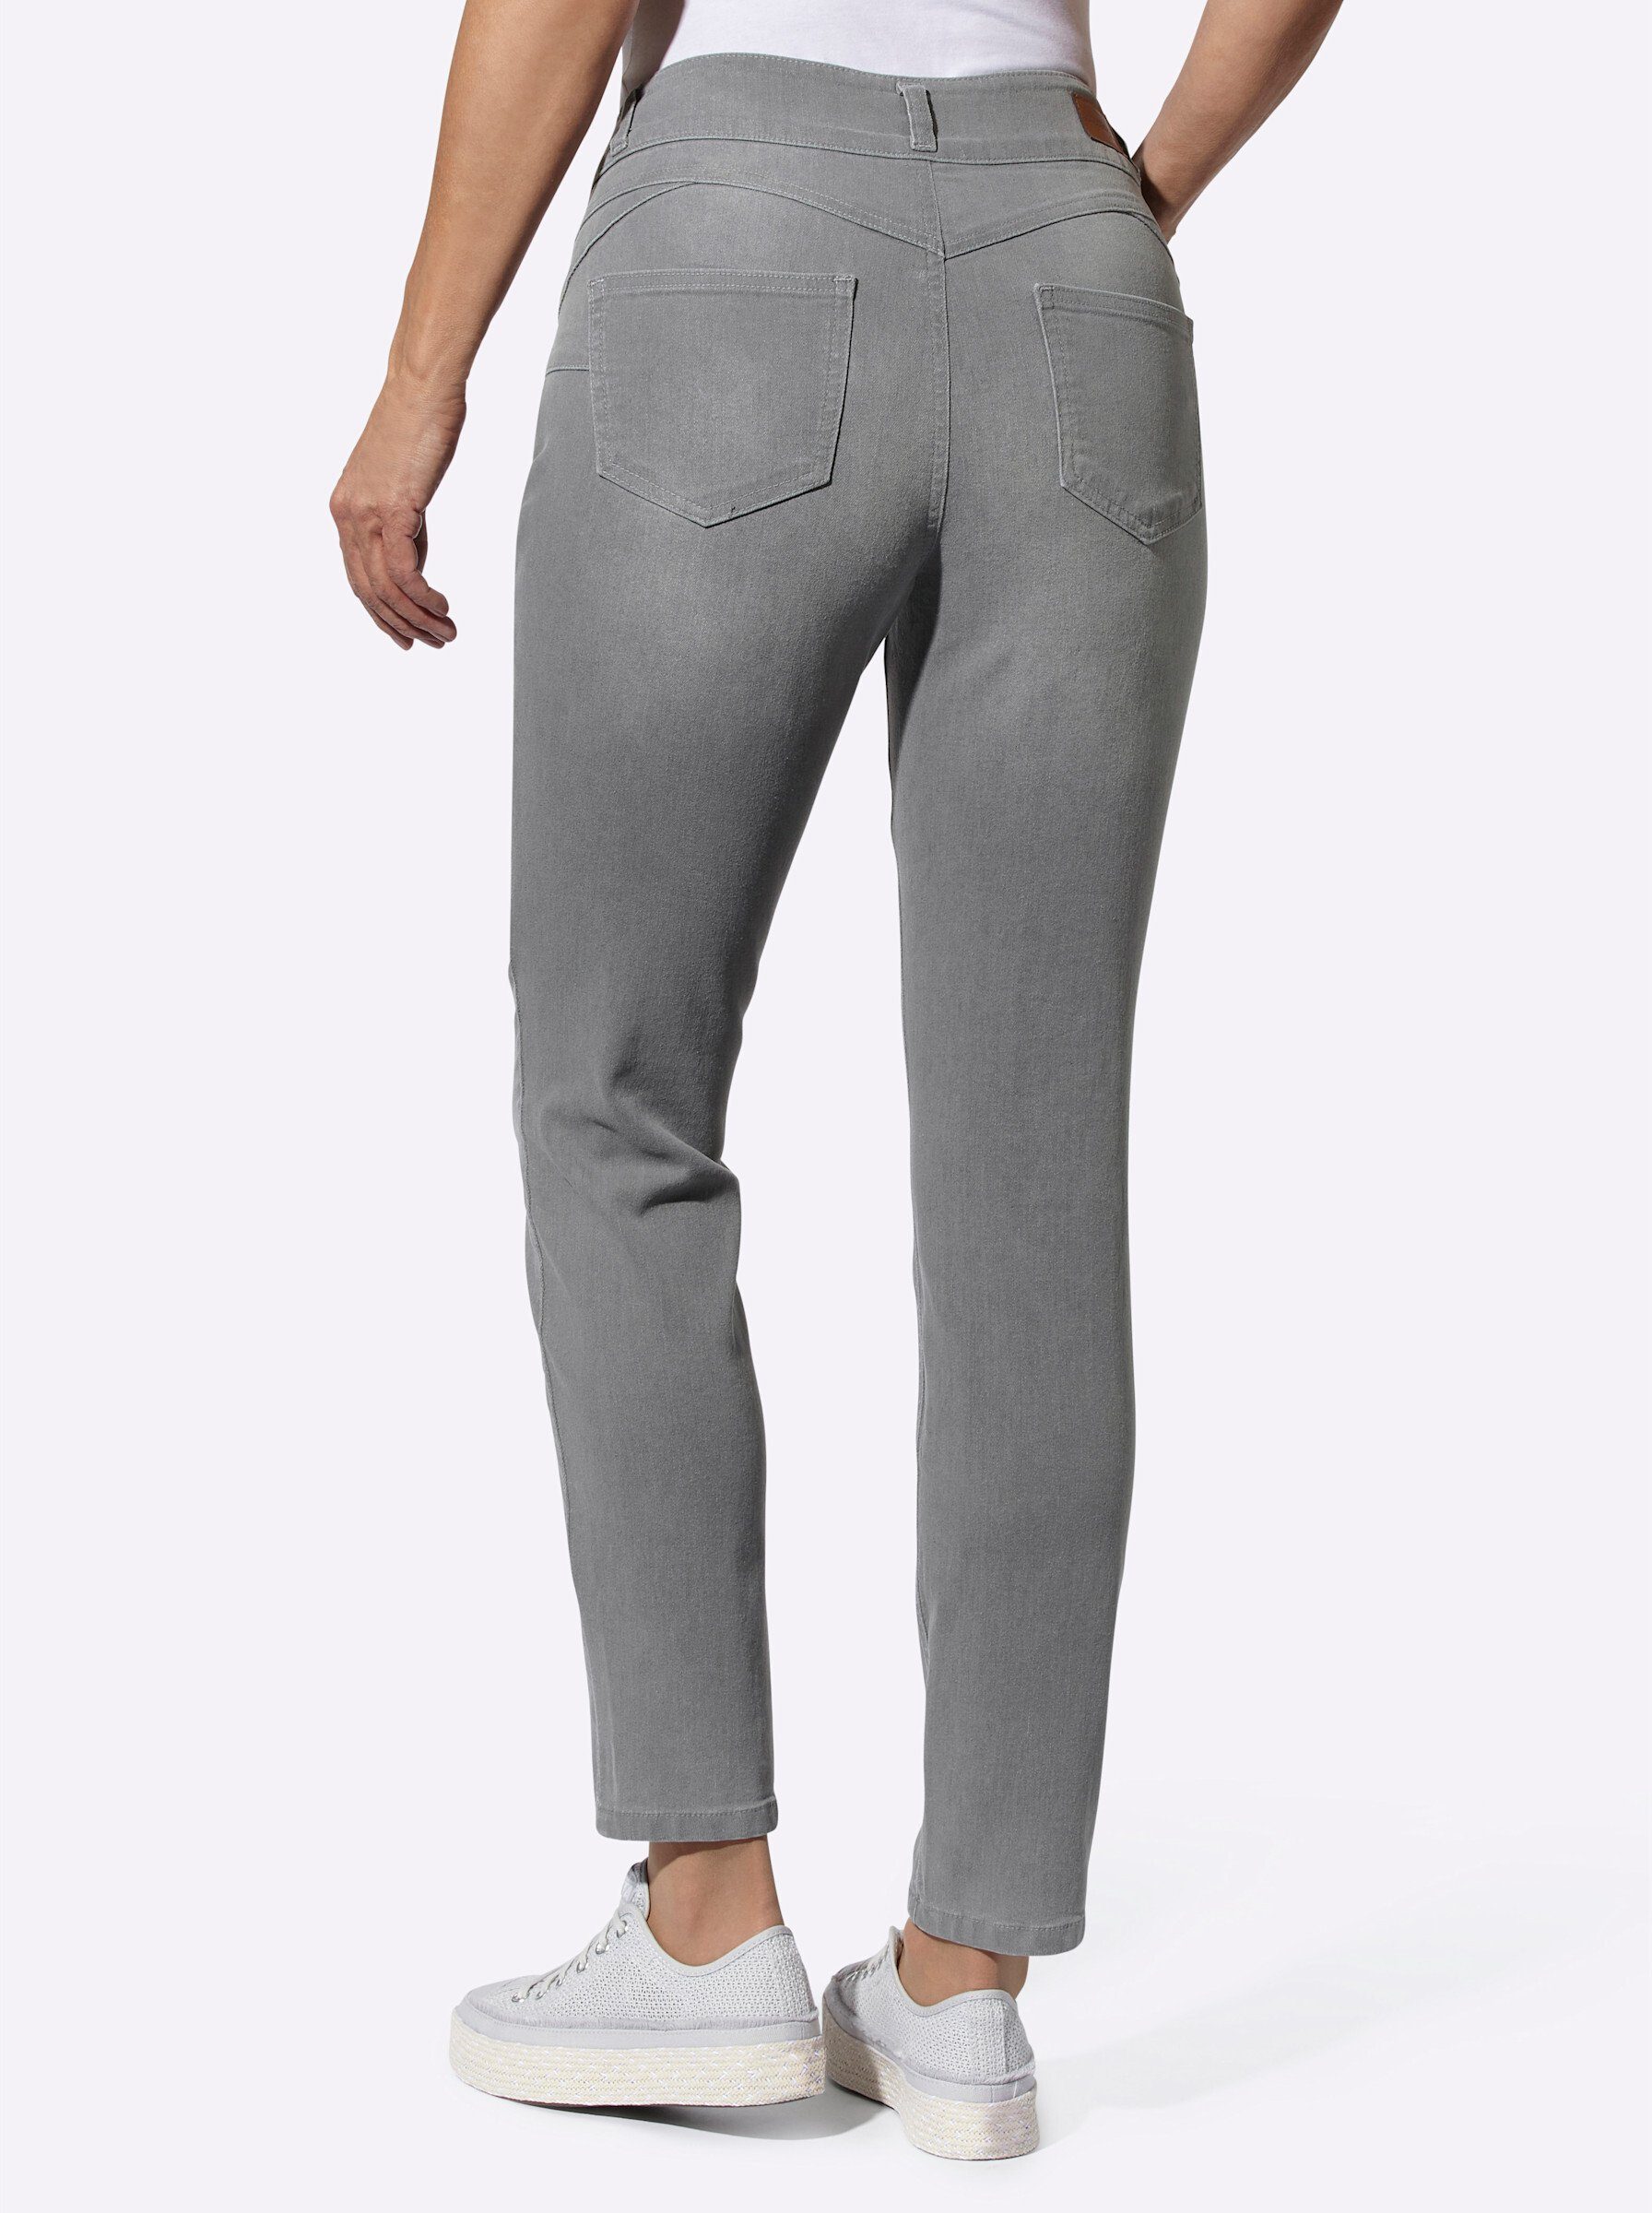 Jeans Bequeme WITT WEIDEN grey-denim light